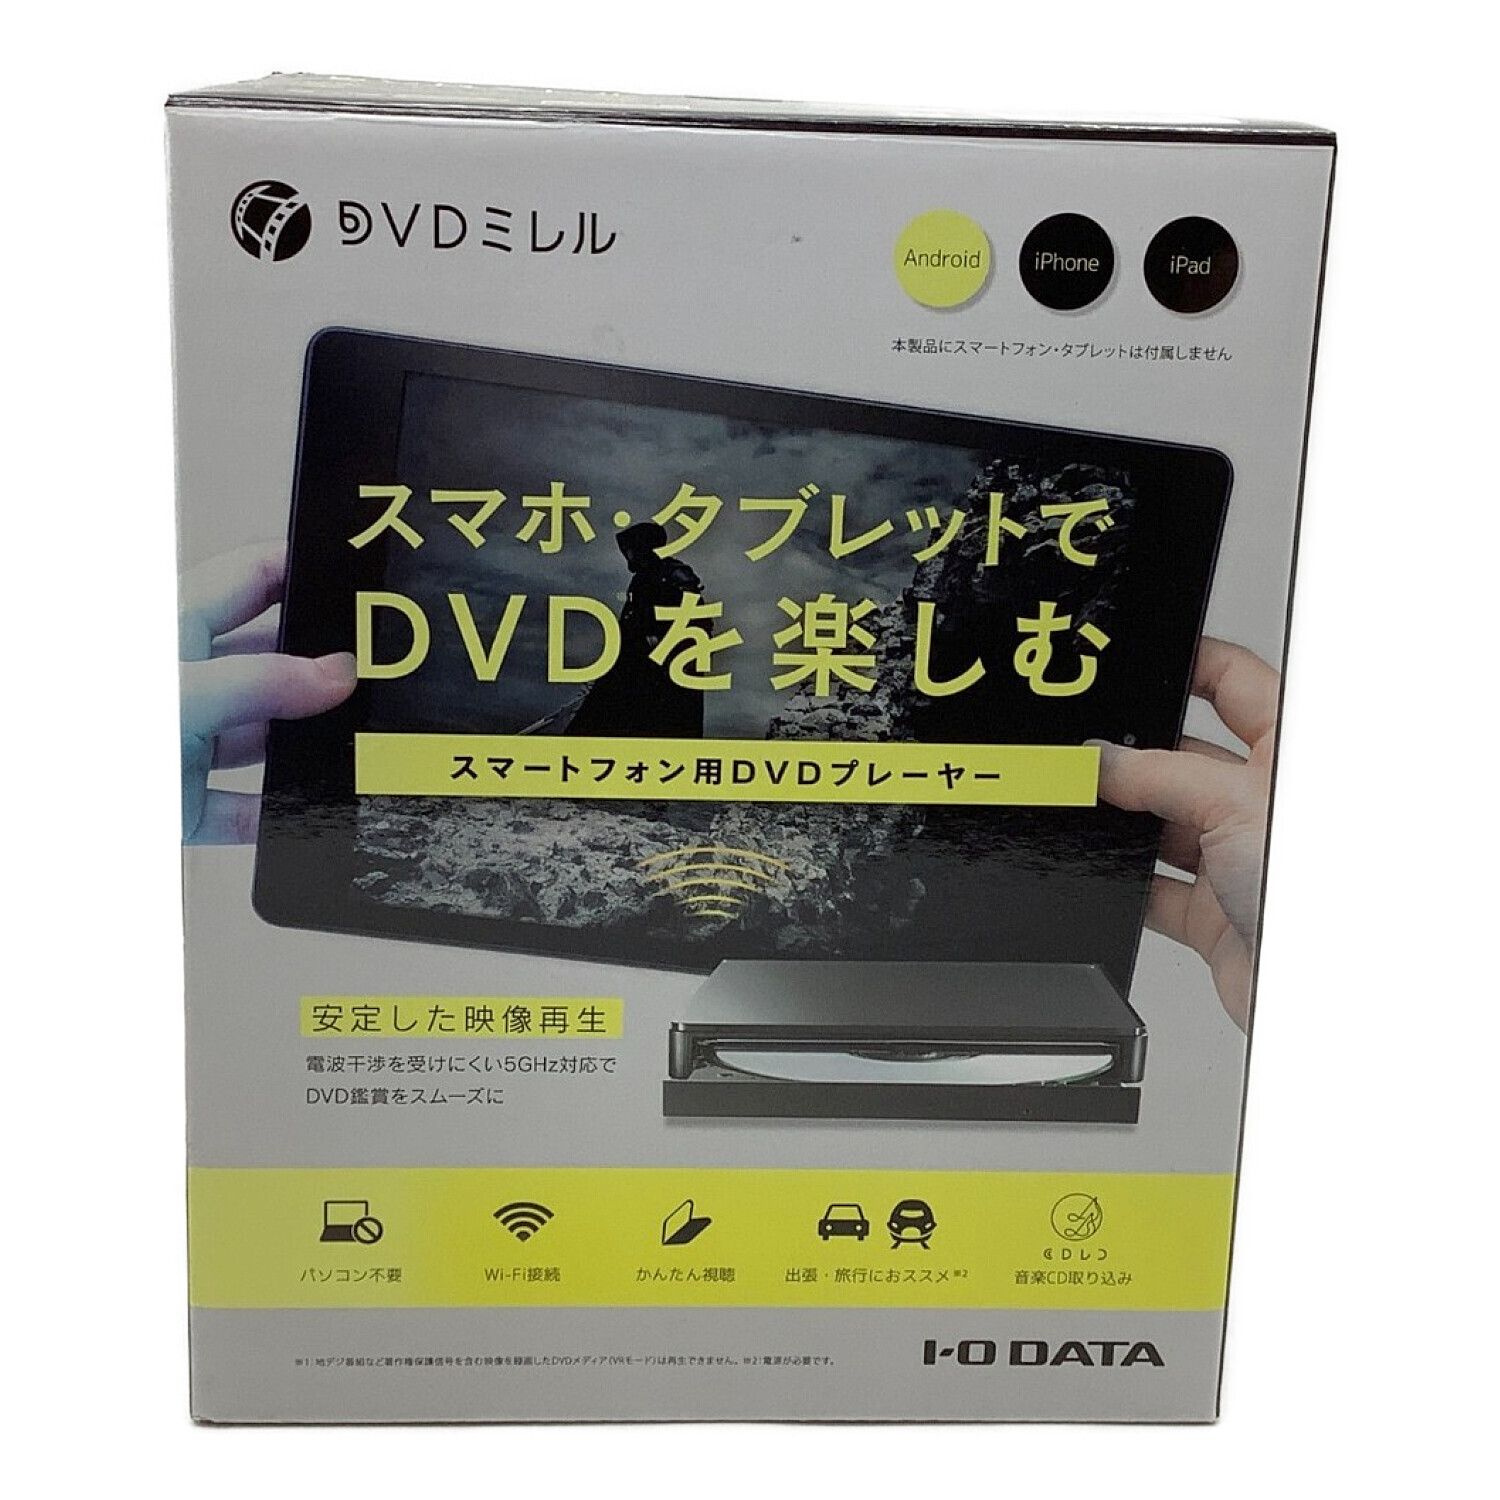 ≪美品≫ 「DVDミレル」スマートフォン・タブレット用DVDプレーヤー